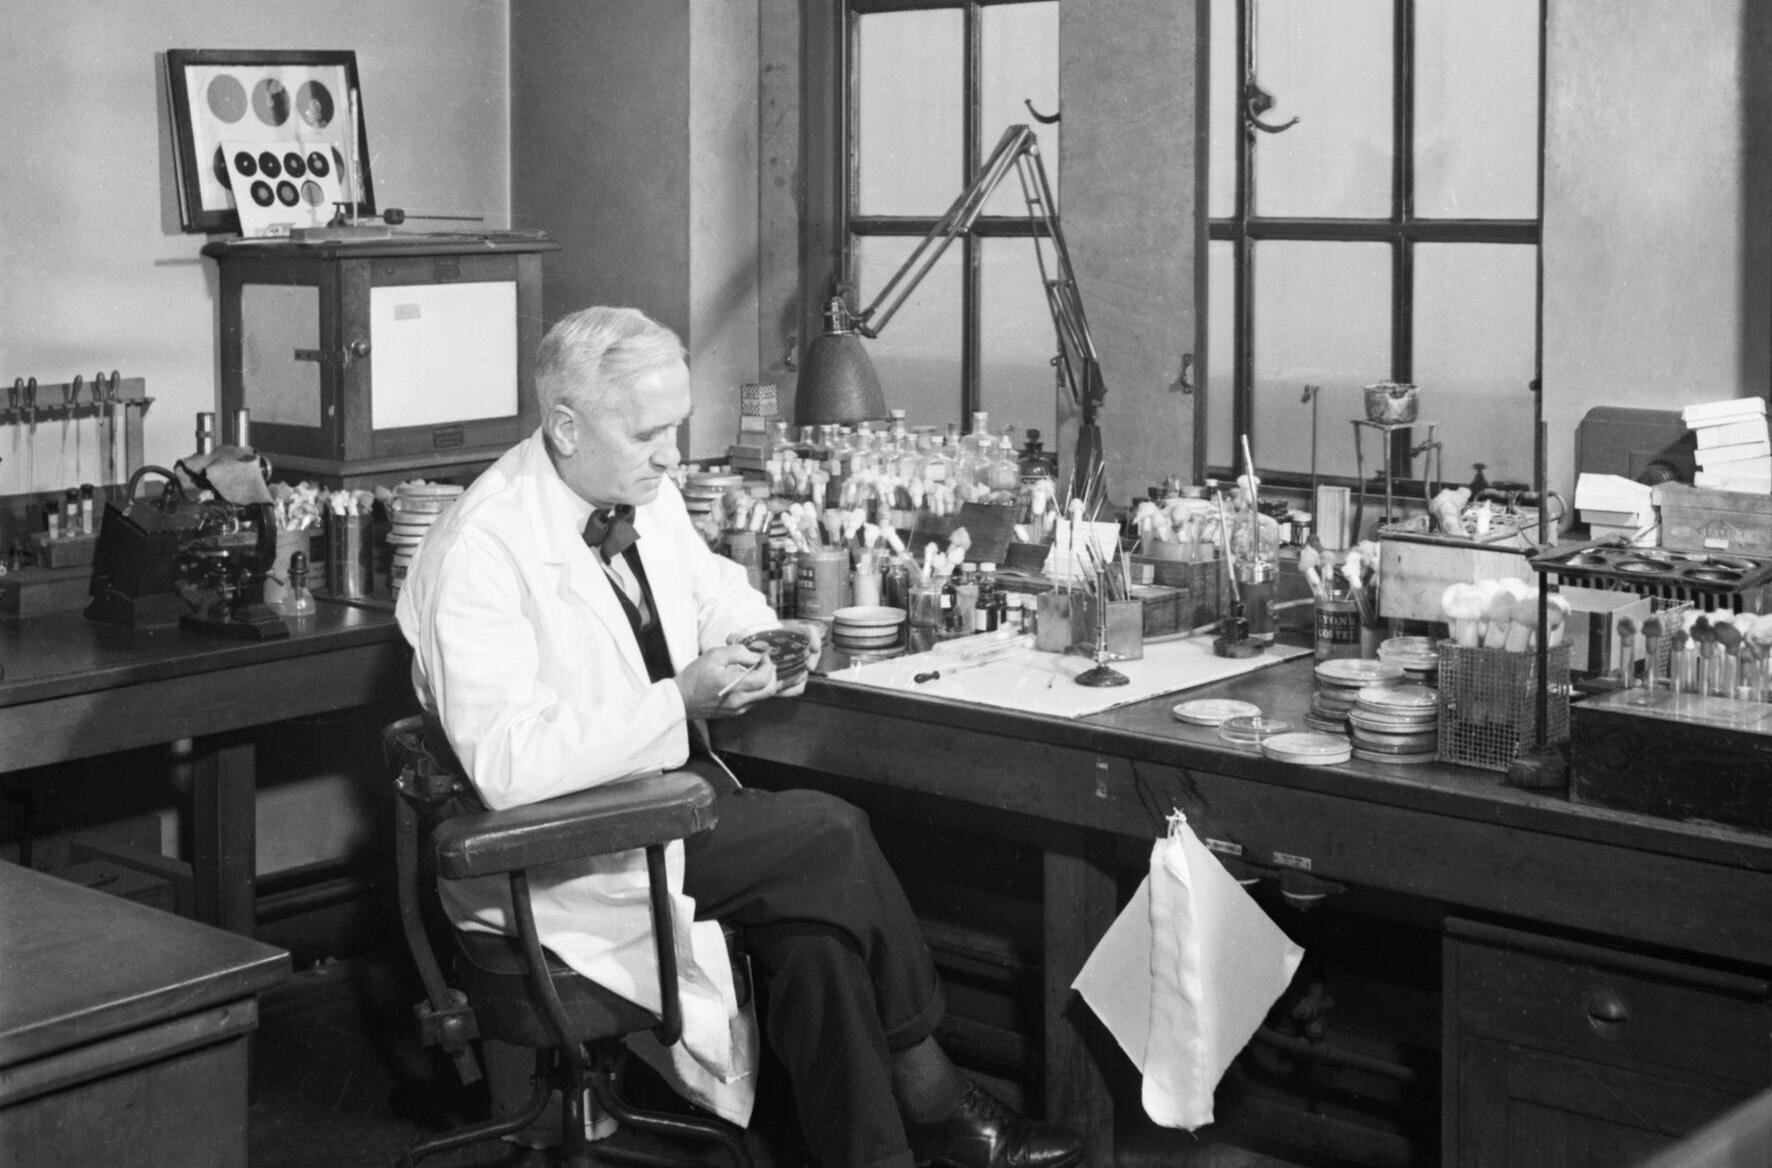 Fleming tuyển 2 nhà nghiên cứu trẻ để cùng hợp tác chỉ ra rằng penicillin có tiềm năng lâm sàng, cả ở dạng bôi và dạng tiêm nếu nó có thể được phát triển đúng cách. (Ảnh: radicalteatowel)